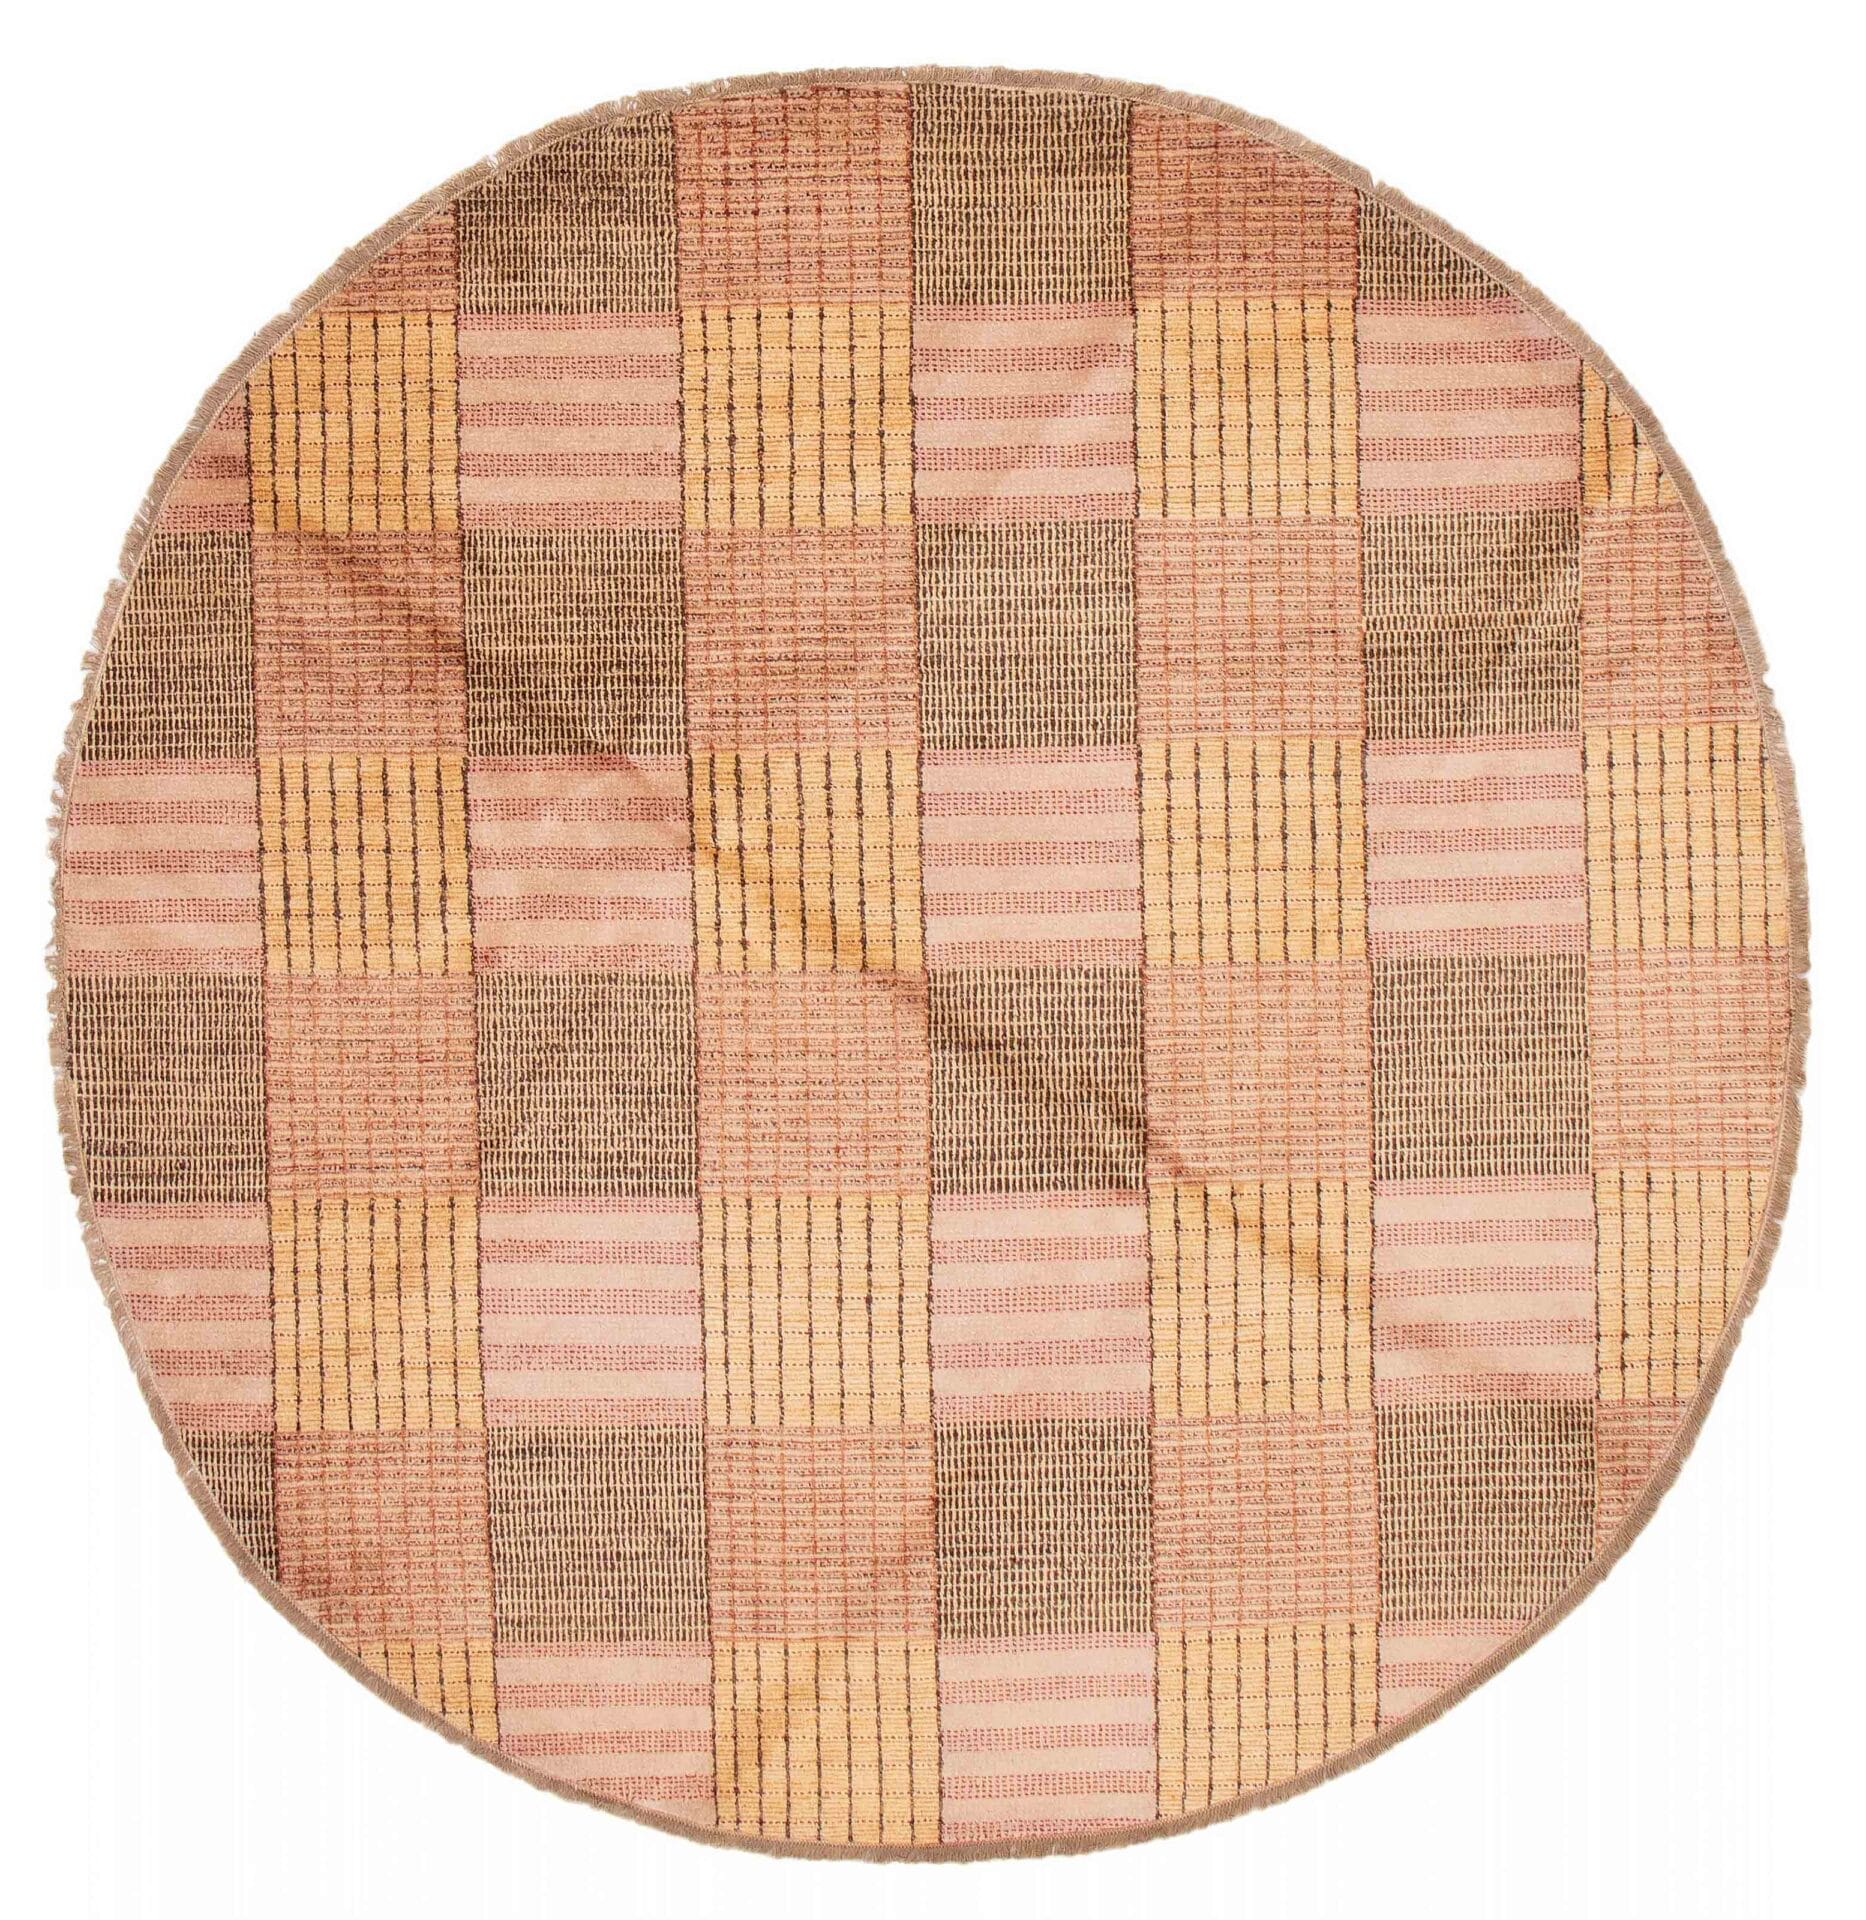 Beschrijving: Een rond tapijt met een roze en bruin Schots ruitjespatroon.